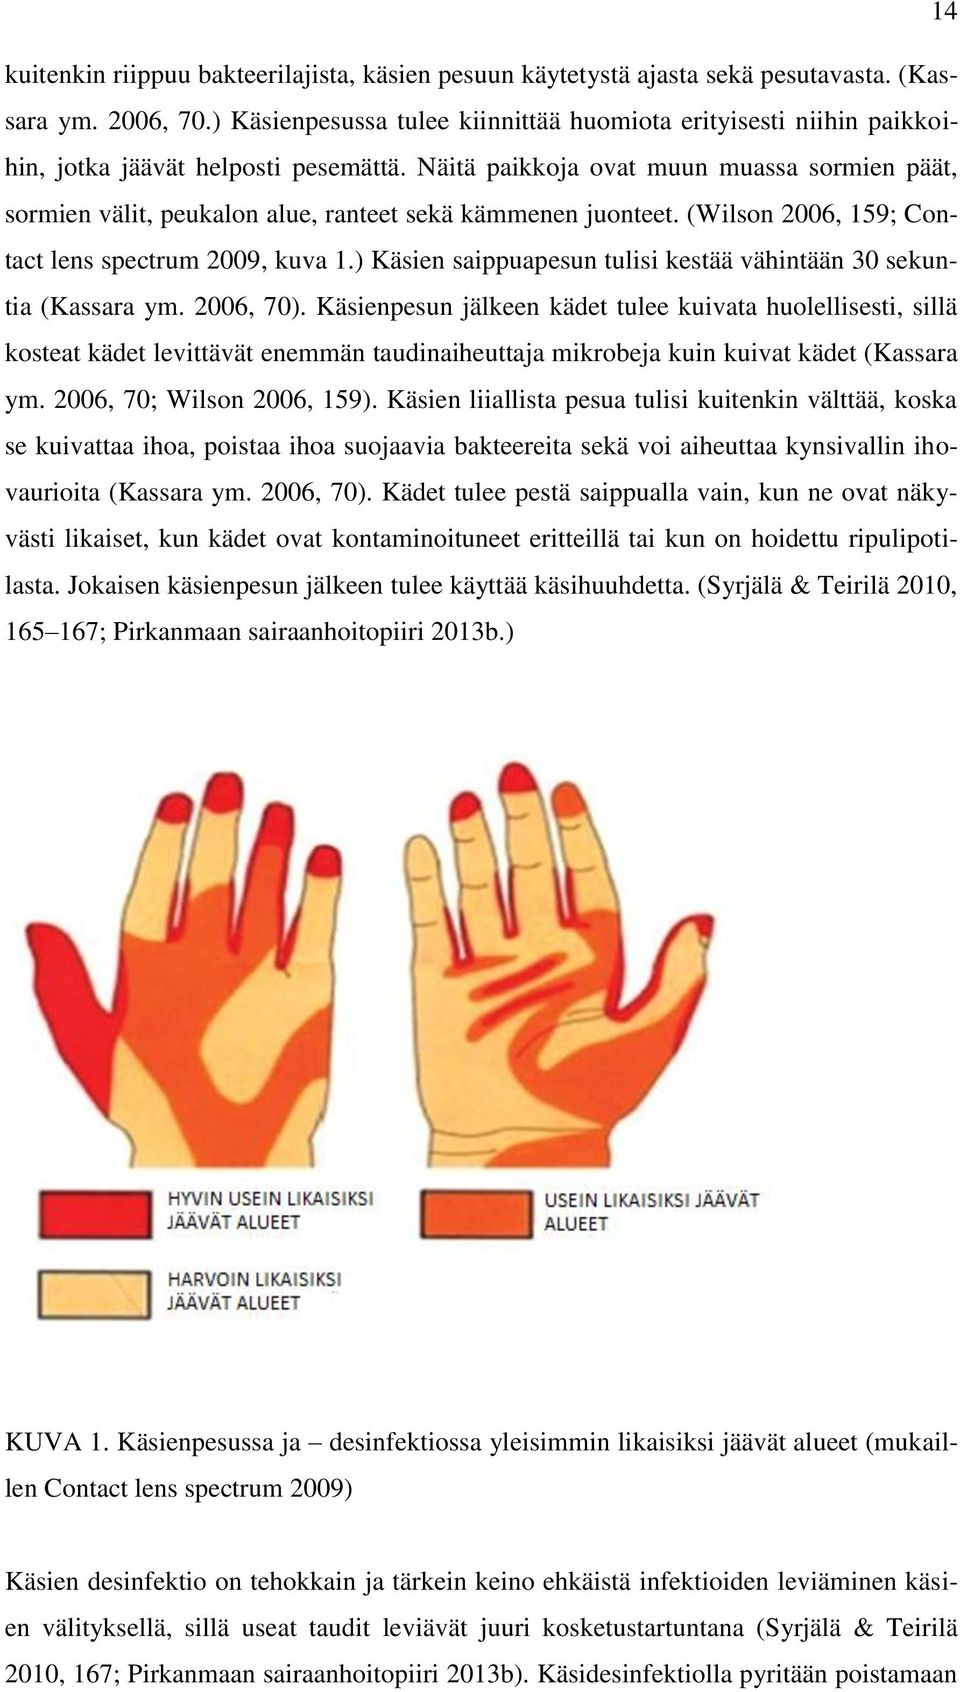 Näitä paikkoja ovat muun muassa sormien päät, sormien välit, peukalon alue, ranteet sekä kämmenen juonteet. (Wilson 2006, 159; Contact lens spectrum 2009, kuva 1.